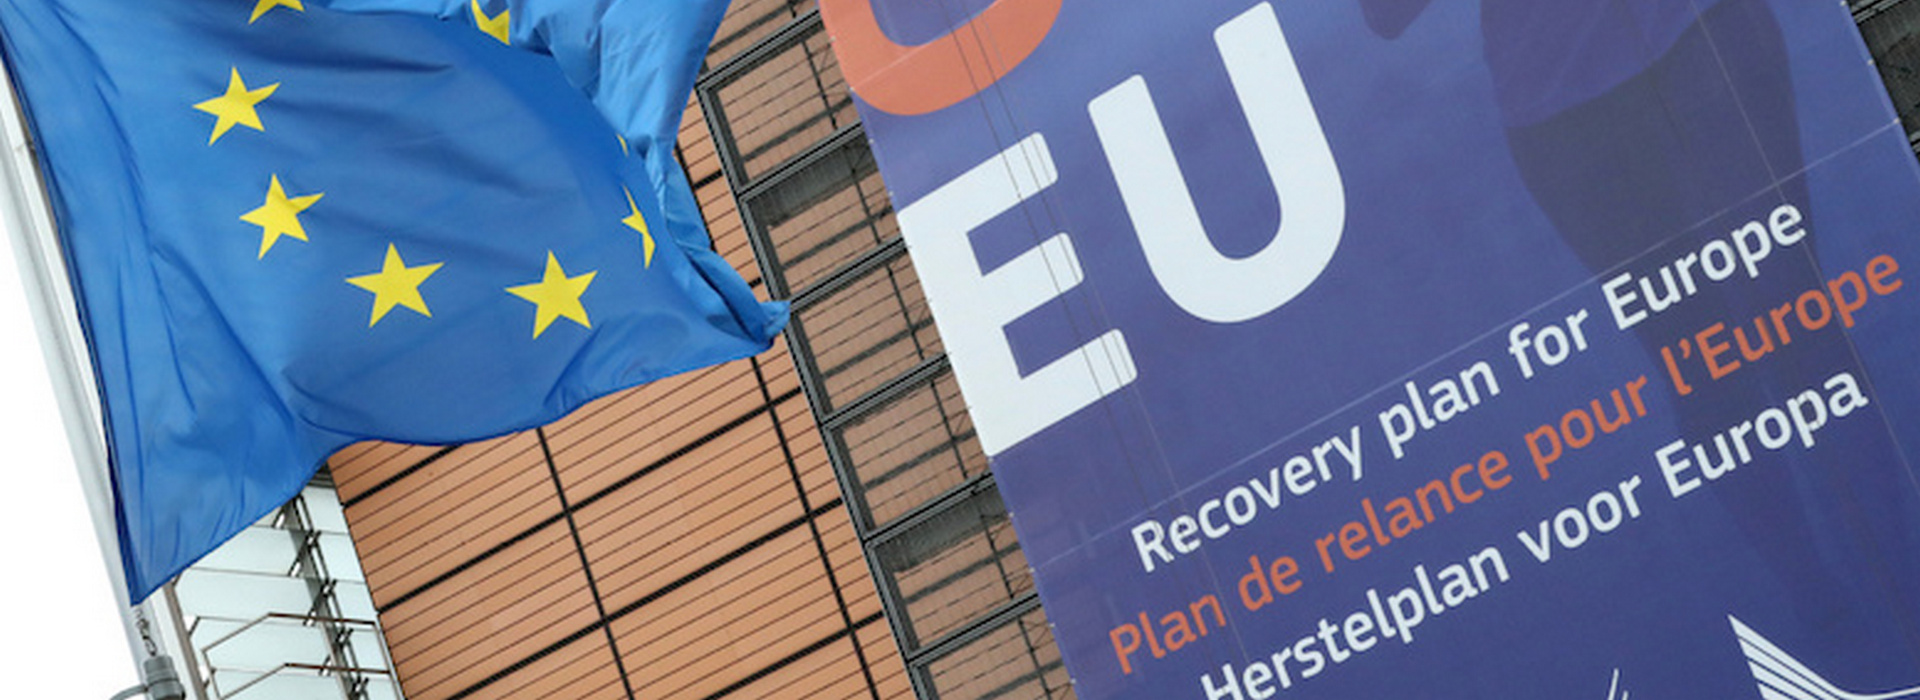 Фінансування ЄС на відновлення в ЦСЄ: історична відповідь на безпрецедентний виклик